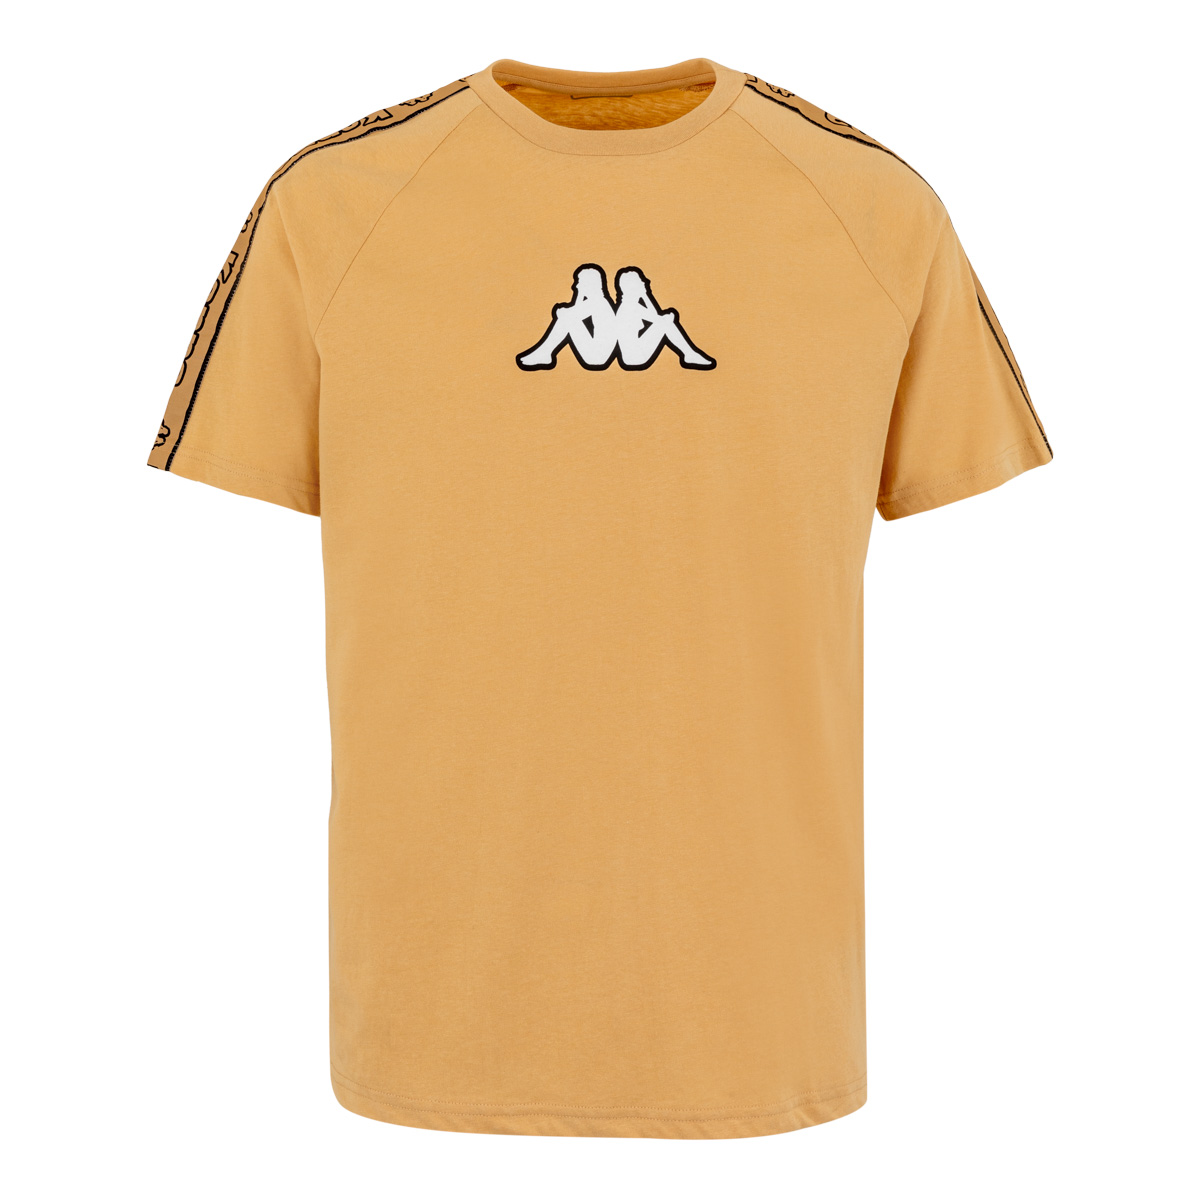 Camiseta Kappa Badalona - Ropa Ideal Para El Gim O Entrenar  MKP